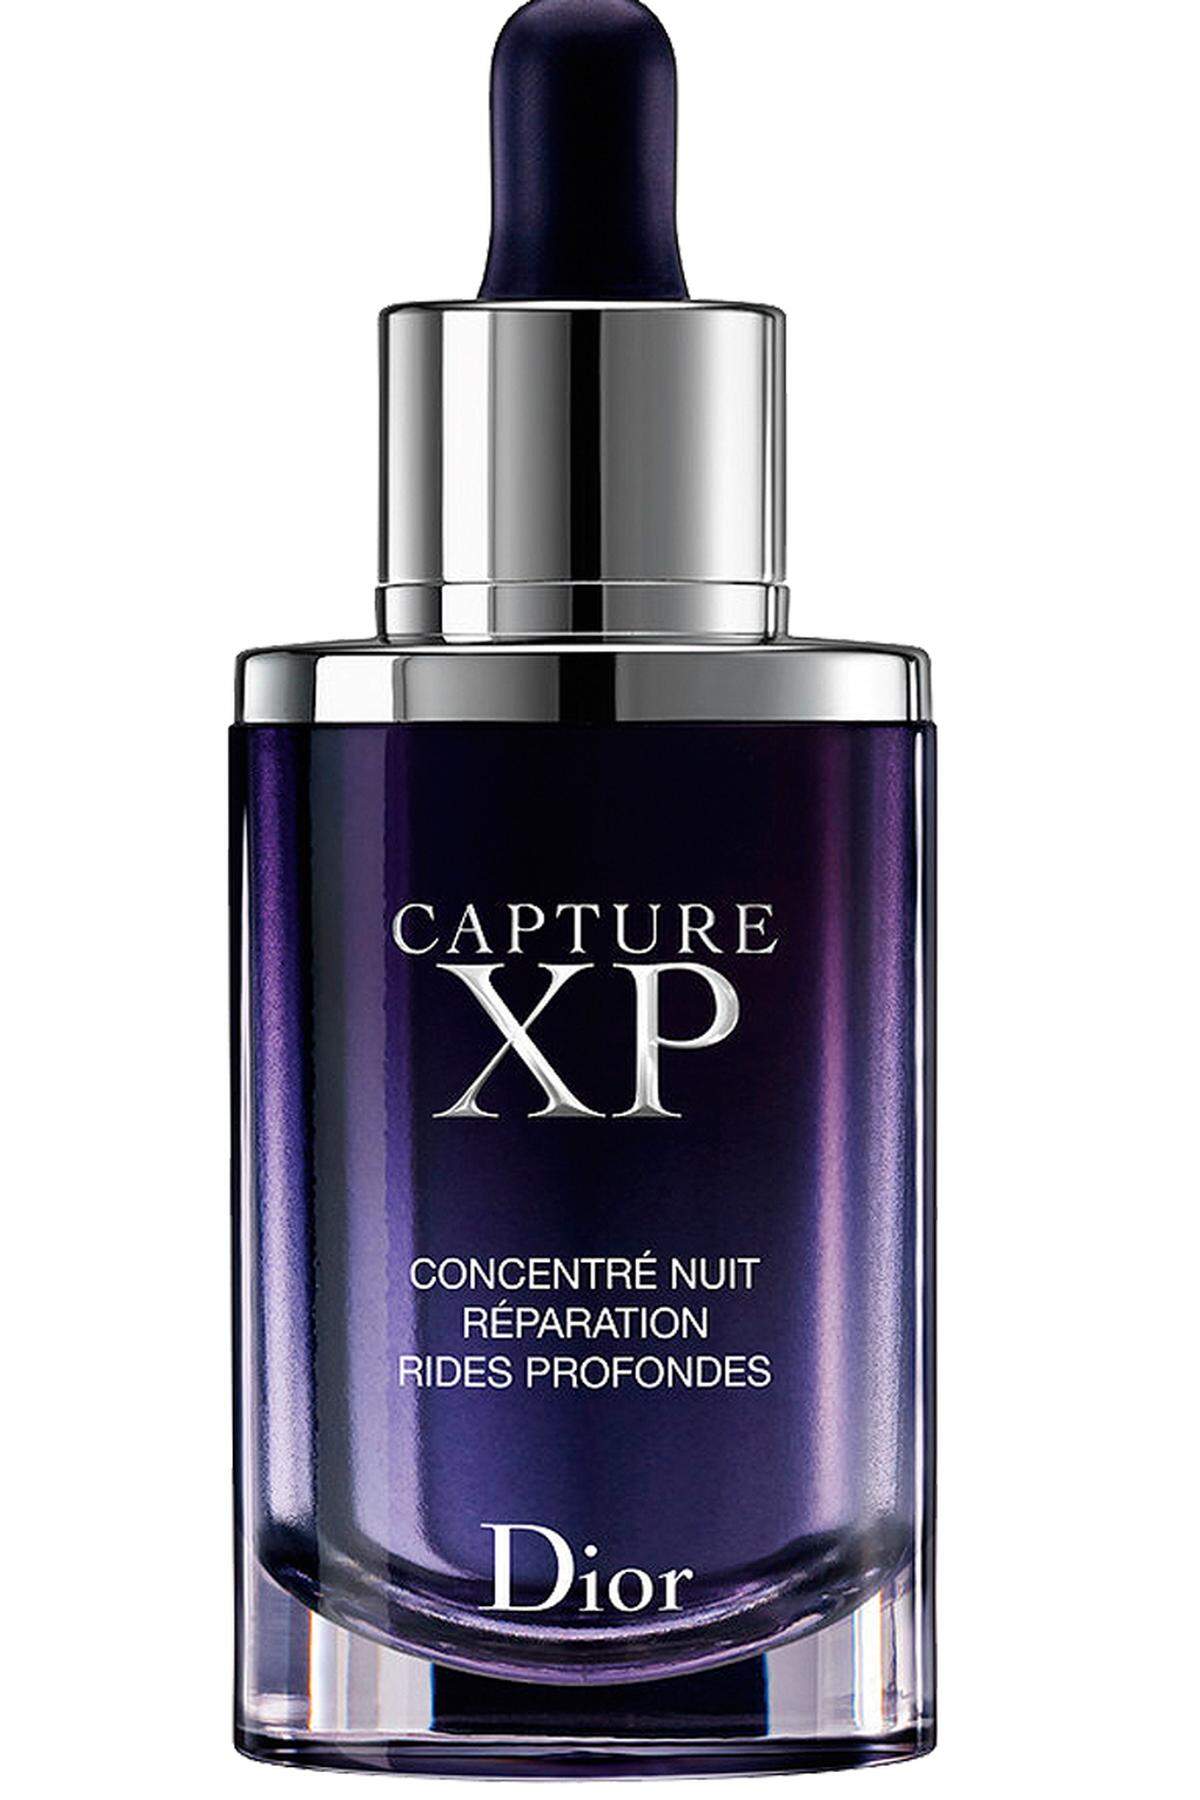 „Capture XP“ von Dior, 122 Euro, im Fachhandel erhältlich